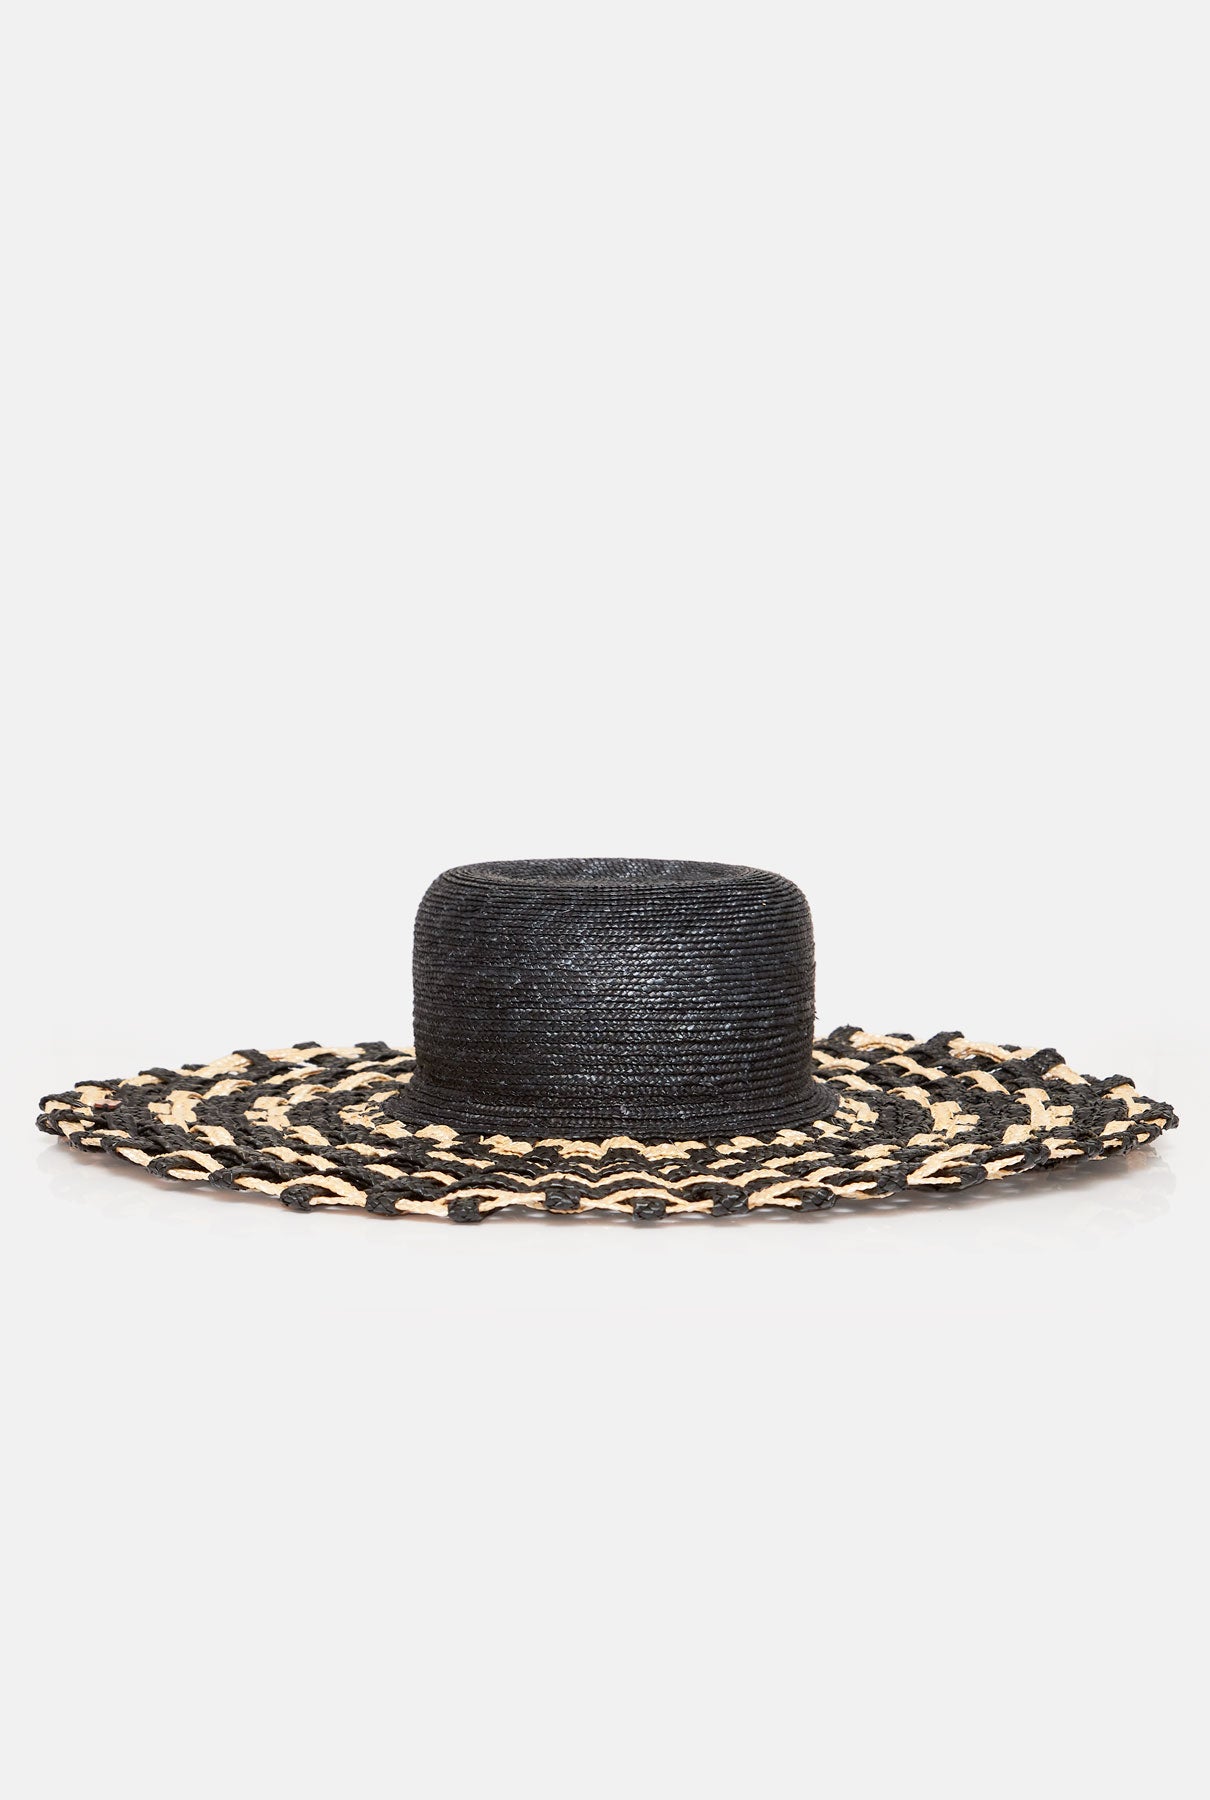 Tris-tras straw hat black headpiece Zahati 